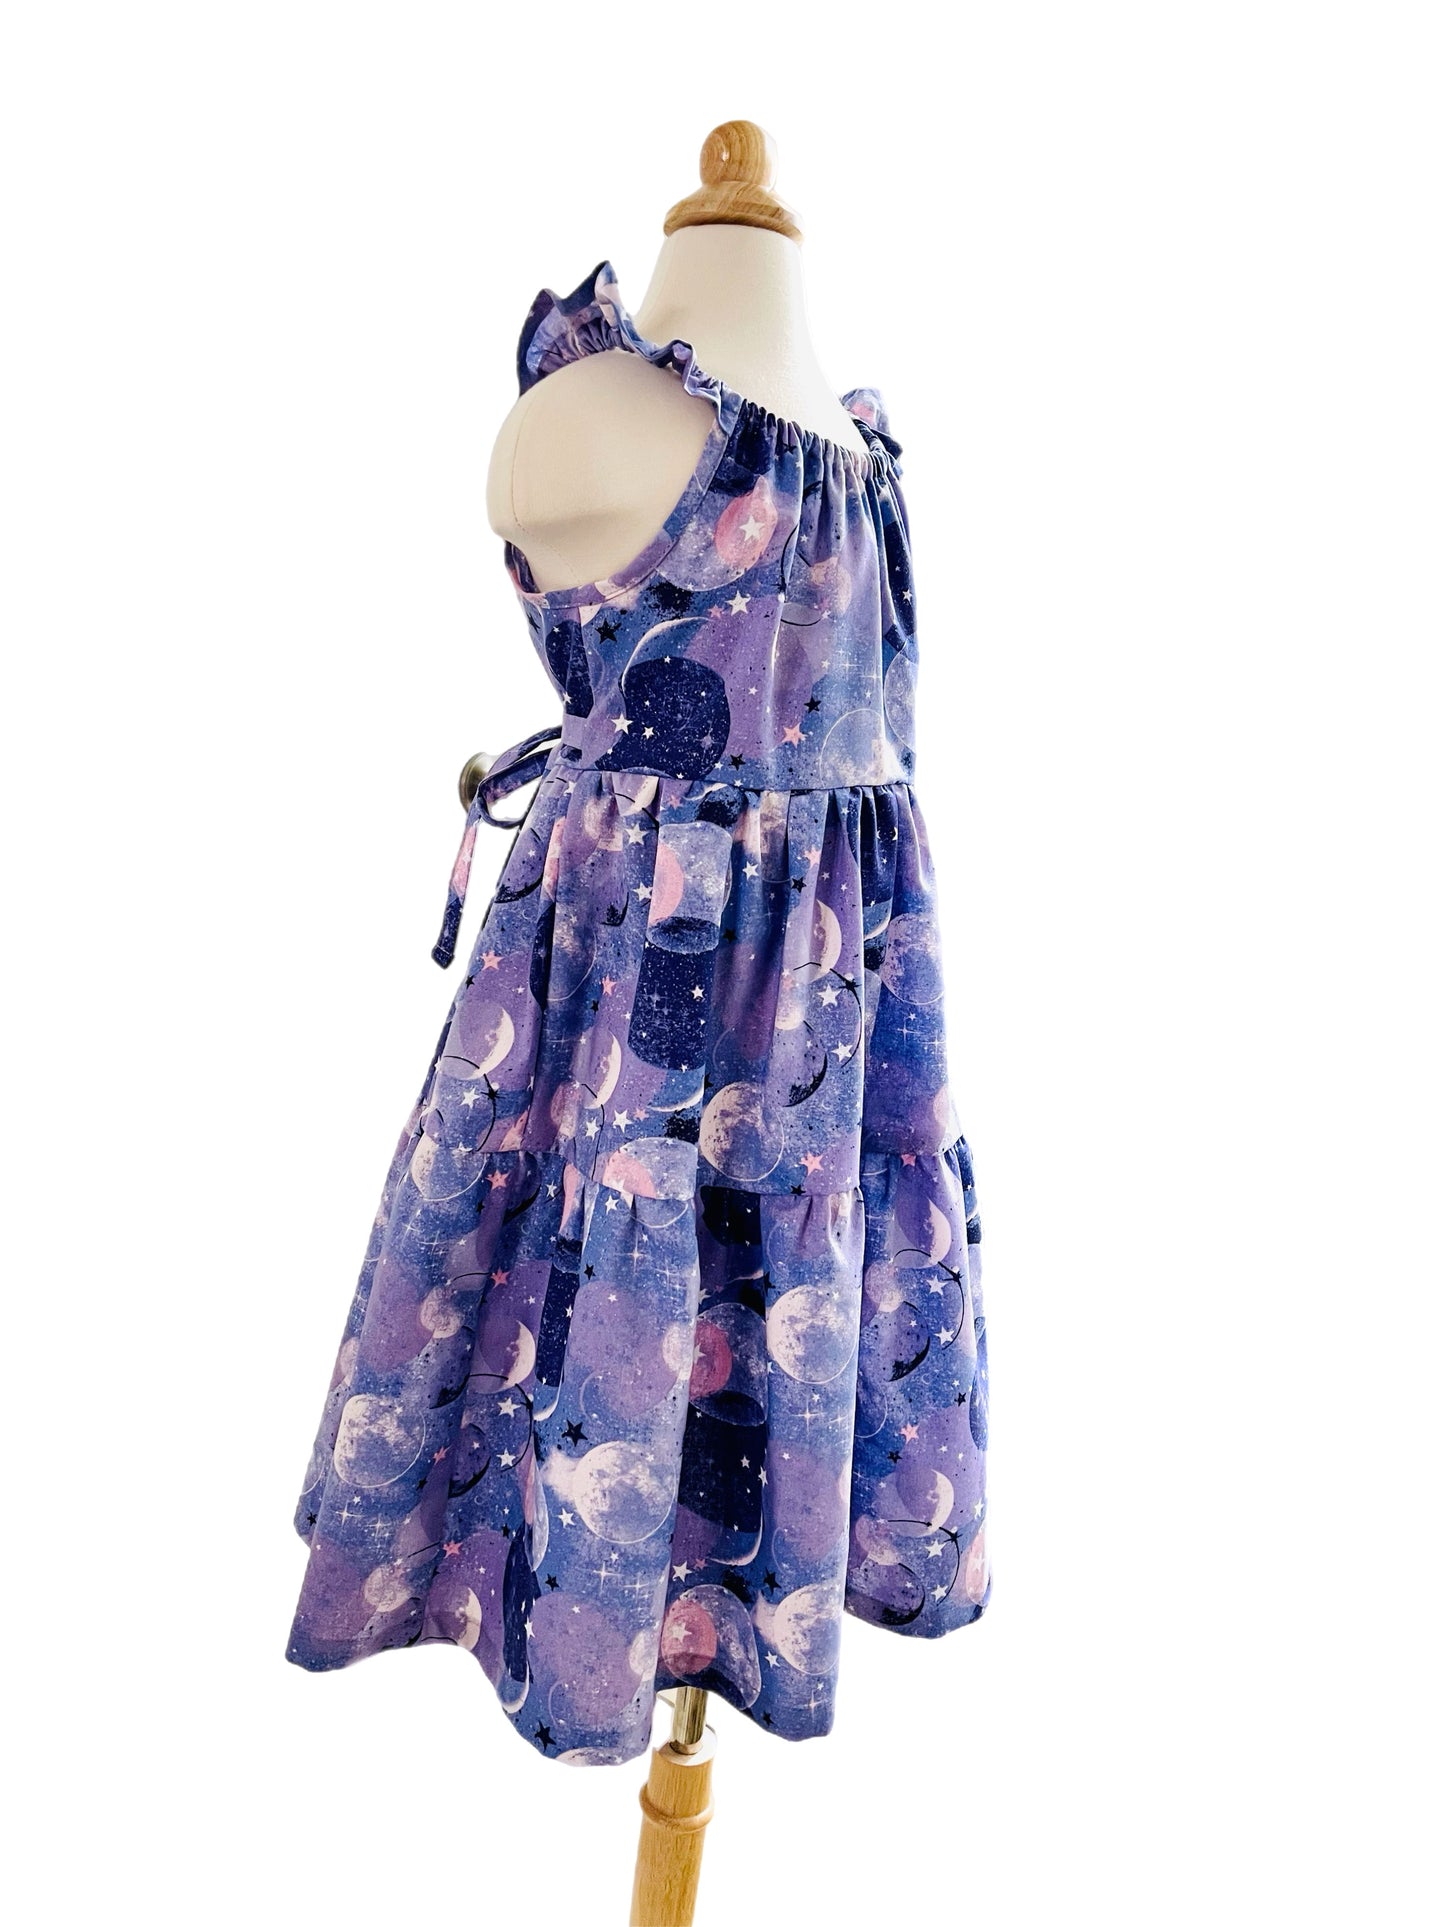 Lavender Moonlight Serenade Dress